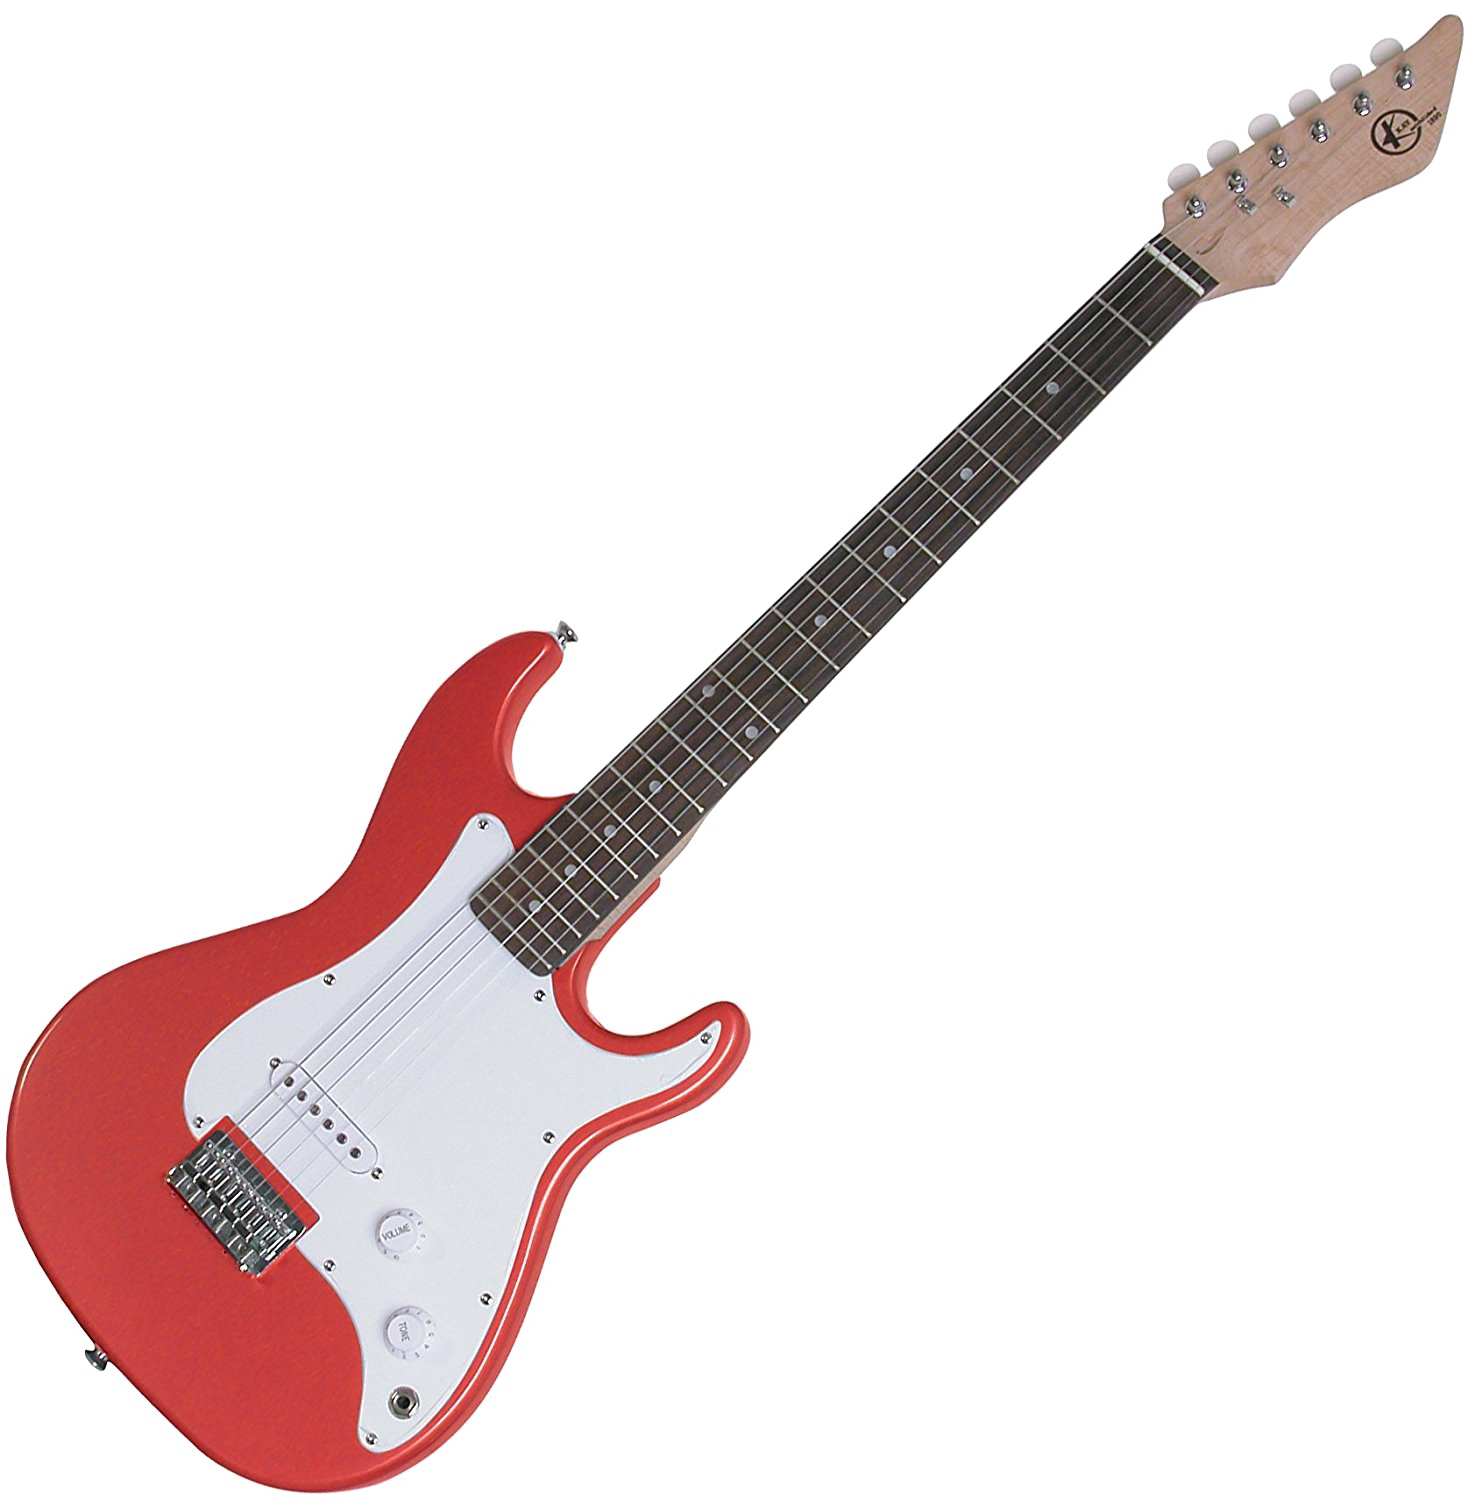 Красная электрическая гитара PNG Image